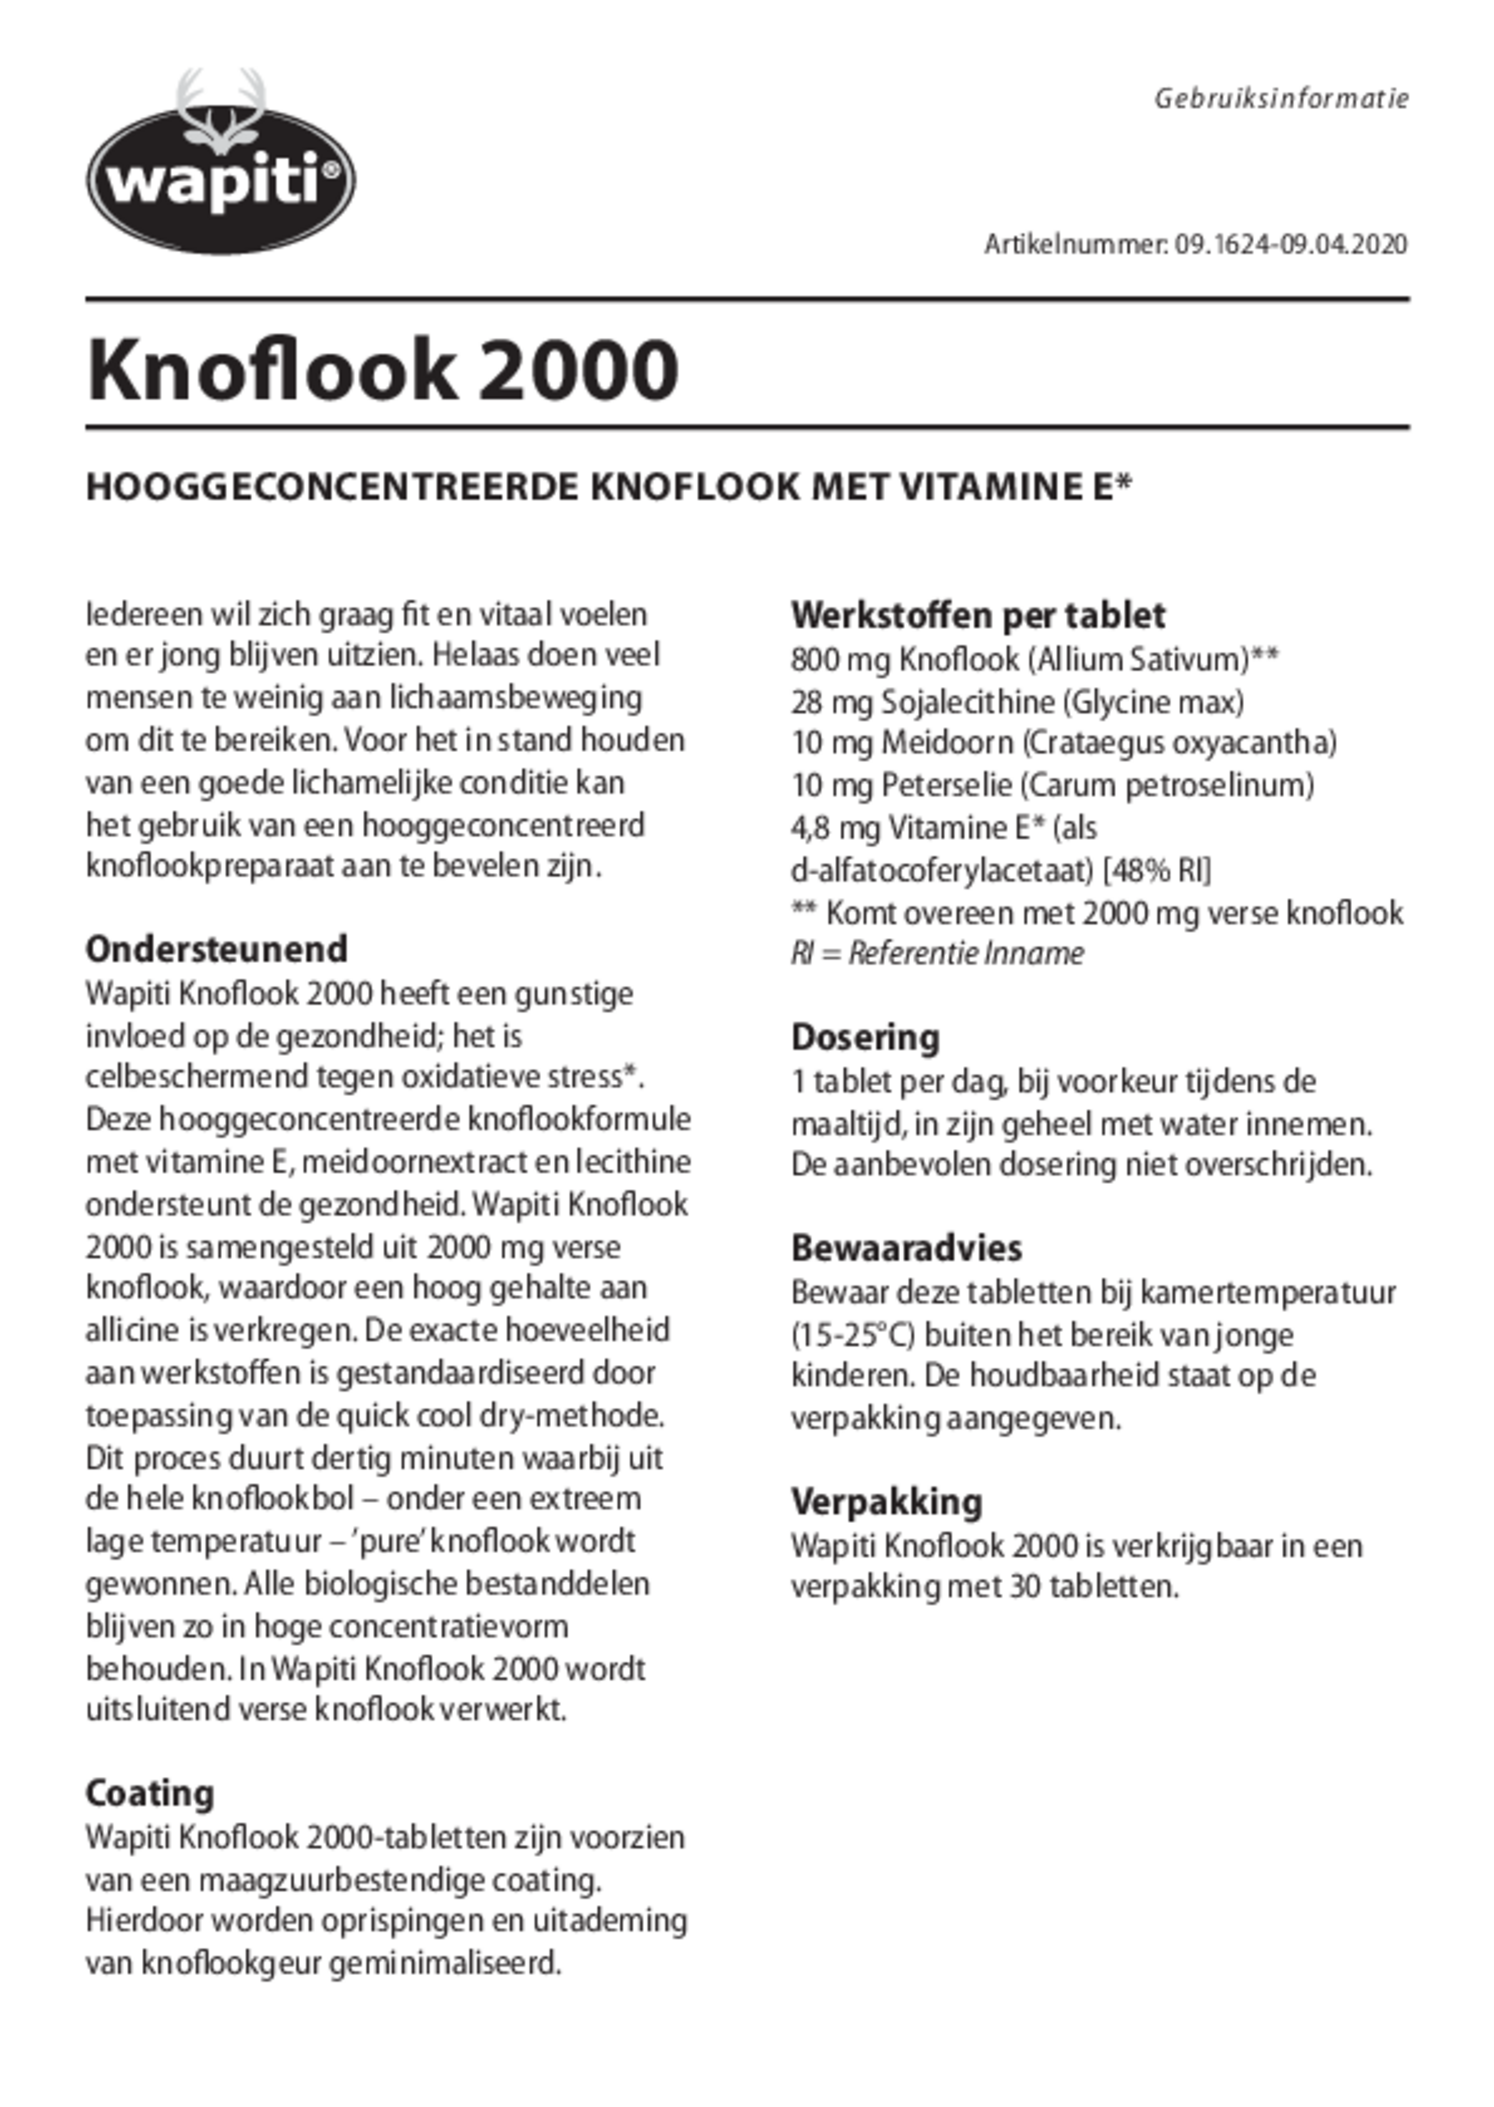 Knoflook 2000 Tabletten afbeelding van document #1, gebruiksaanwijzing